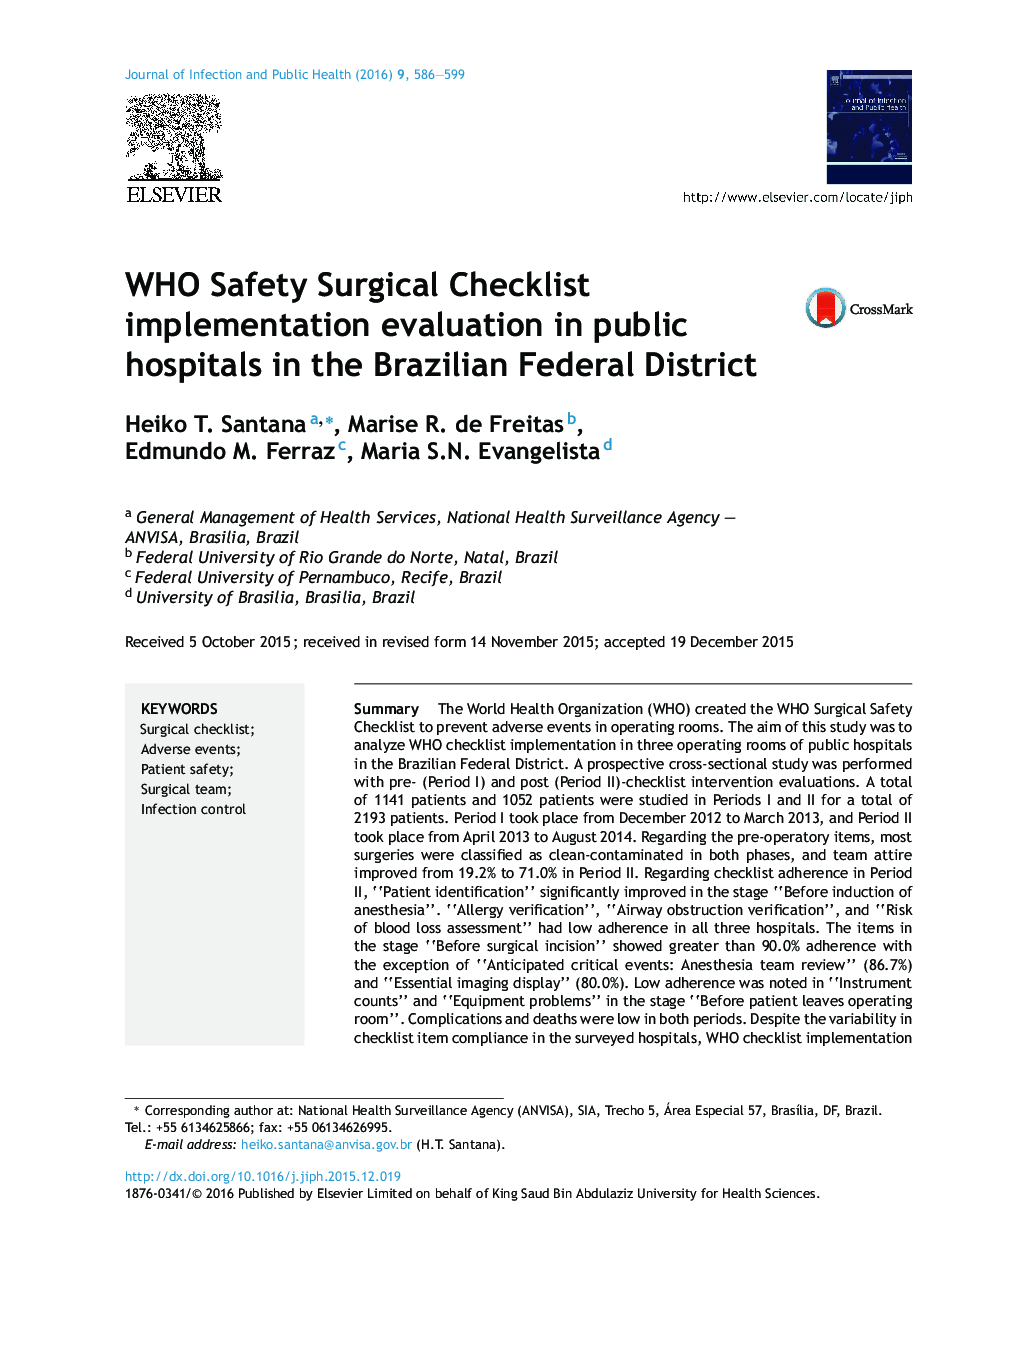 ارزیابی اجرای فهرست بررسی جراحی ایمنی WHO در بیمارستانهای دولتی در منطقه فدرال برزیل